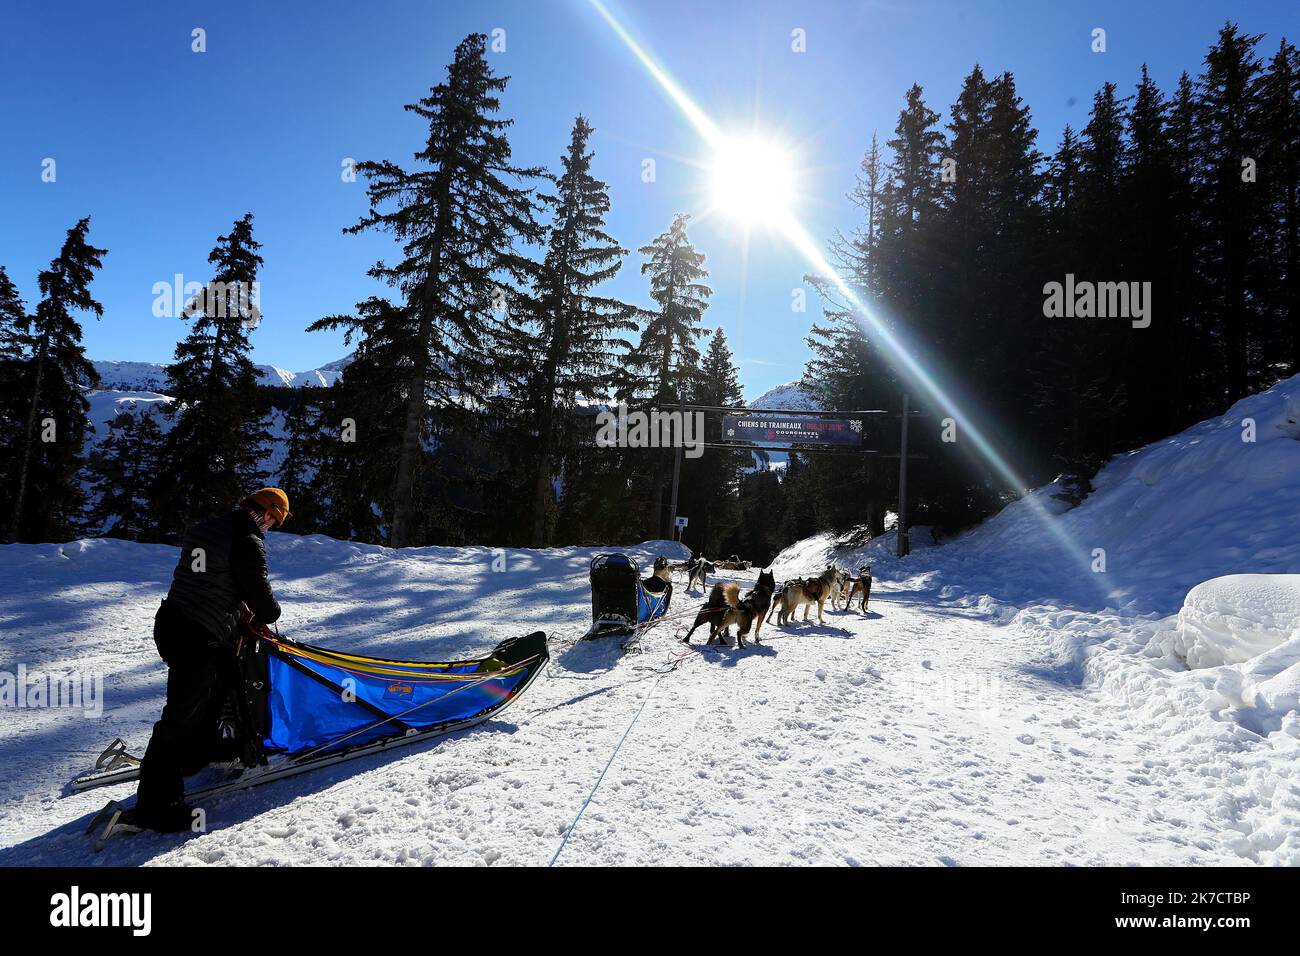 ©PHOTOPQR/VOIX DU NORD/Ludovic Maillard ; 17/02/2021 ; Courchevel le 17.02.2021, Courchevel est une station de sports d hiver de la vallee de la Tarentaise situee dans la commune de Courchevel, dans le departement de la Savoie, sans remontees mecaniques , courchevel s adapte, ski de fond, raquettes, luges chiens de traineaux etc . LA VOIX DU NORD / PHOTO LUDOVIC MAILLARD - Courcheve French Alps ski resort. It is a part of Les Trois Vallées, the largest linked ski areas in the world. There is no shortage of activities in the resort even in times of Covid  Stock Photo